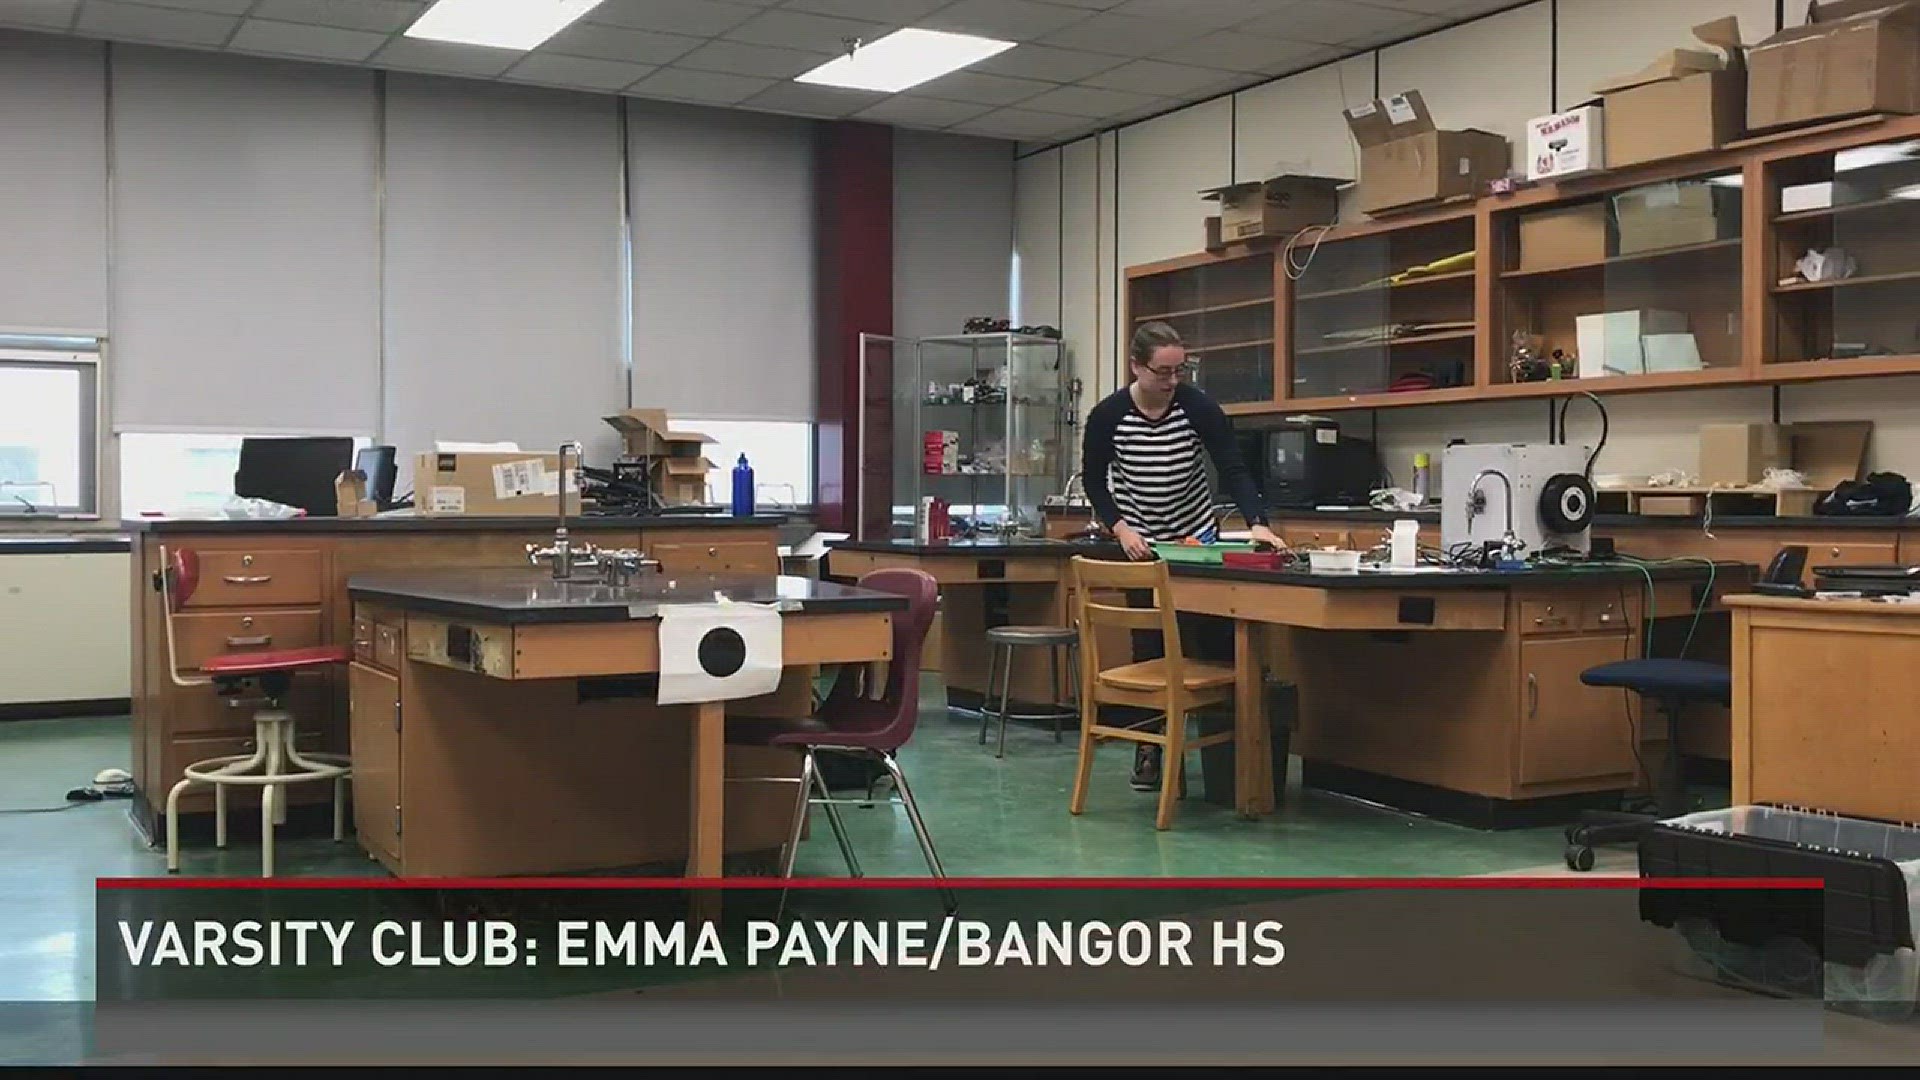 Varsity Club: Emma Payne/Bangor HS